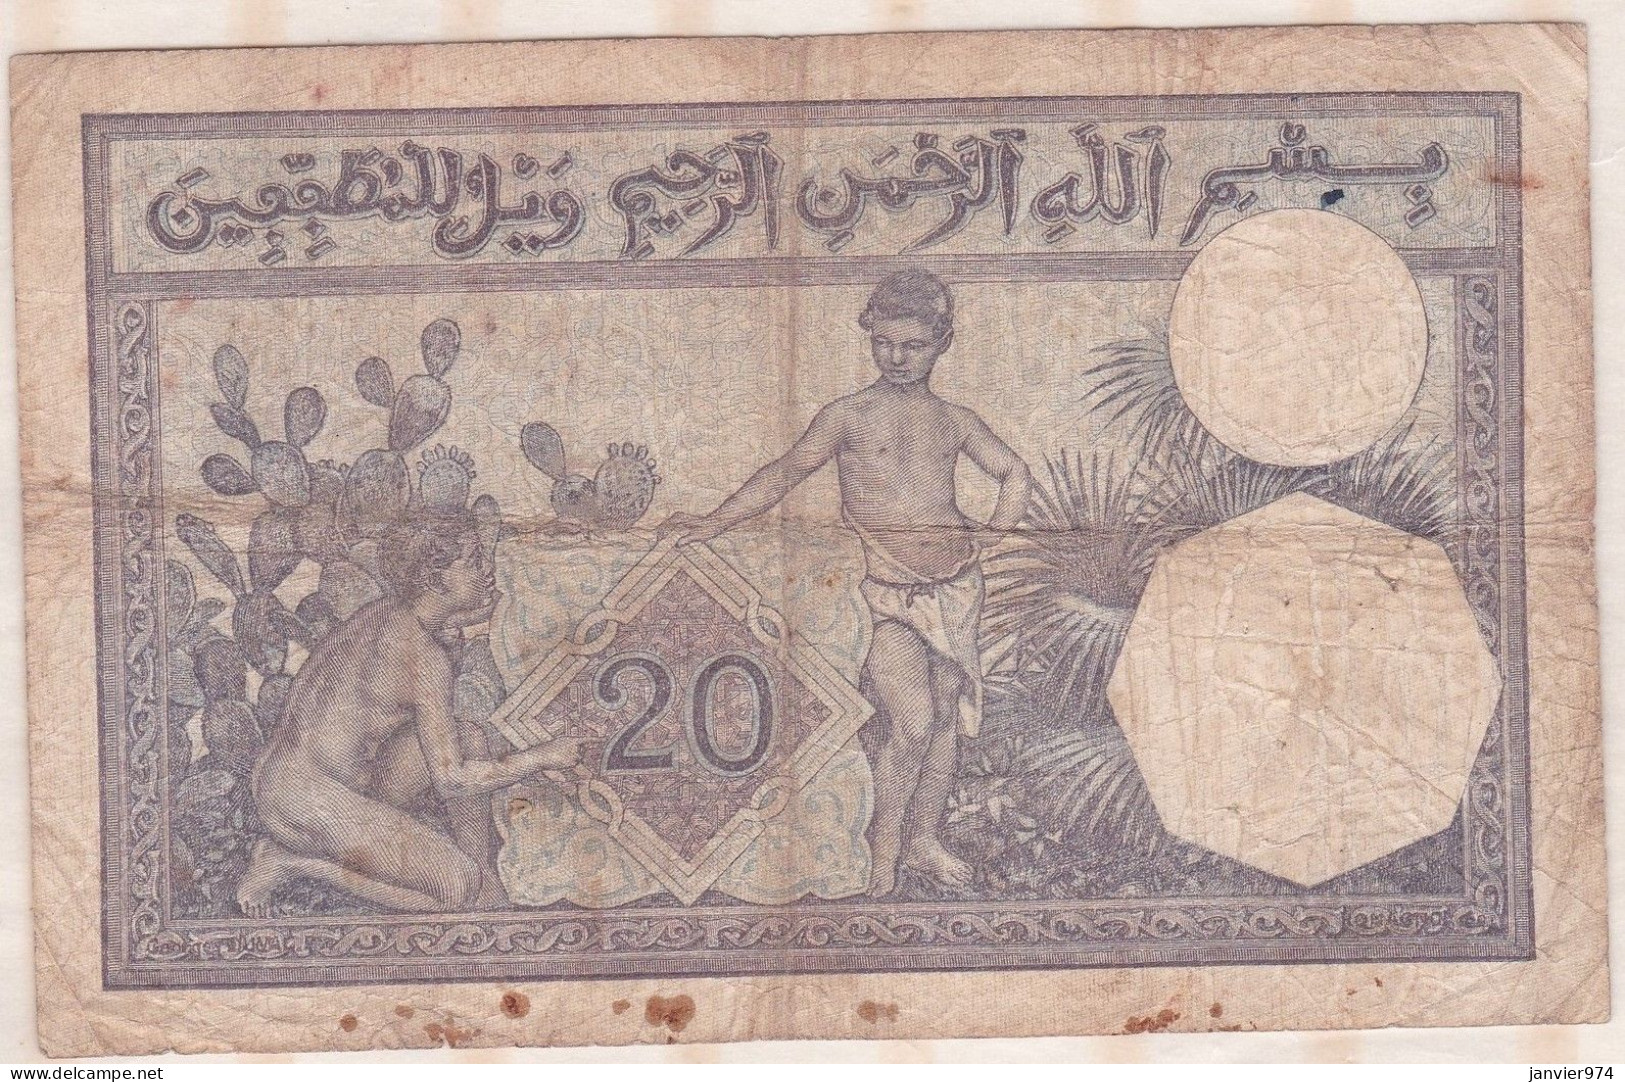 Banque De L'Algérie ,surcharge  Tunisie , 20 Francs Du 4 3 1929 , Alphabet A.2936 ,n° 890 - Tunisia